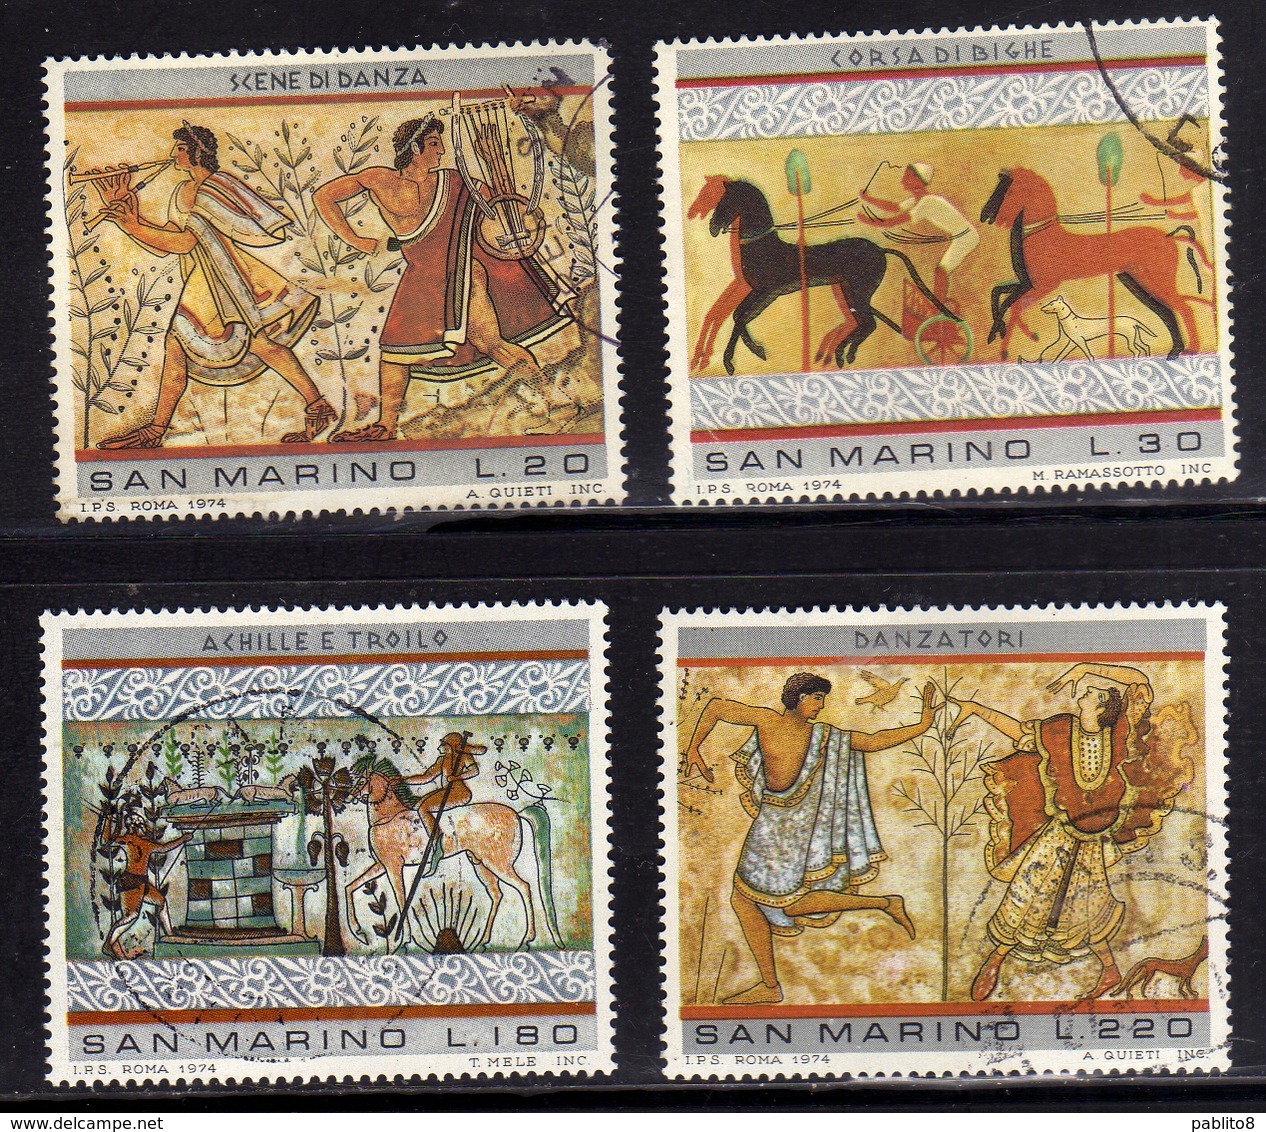 REPUBBLICA DI SAN MARINO 1975 ARTE ETRUSCA ETRUSCAN ART SERIE COMPLETA COMPLETE SET USATA USED OBLITERE' - Used Stamps